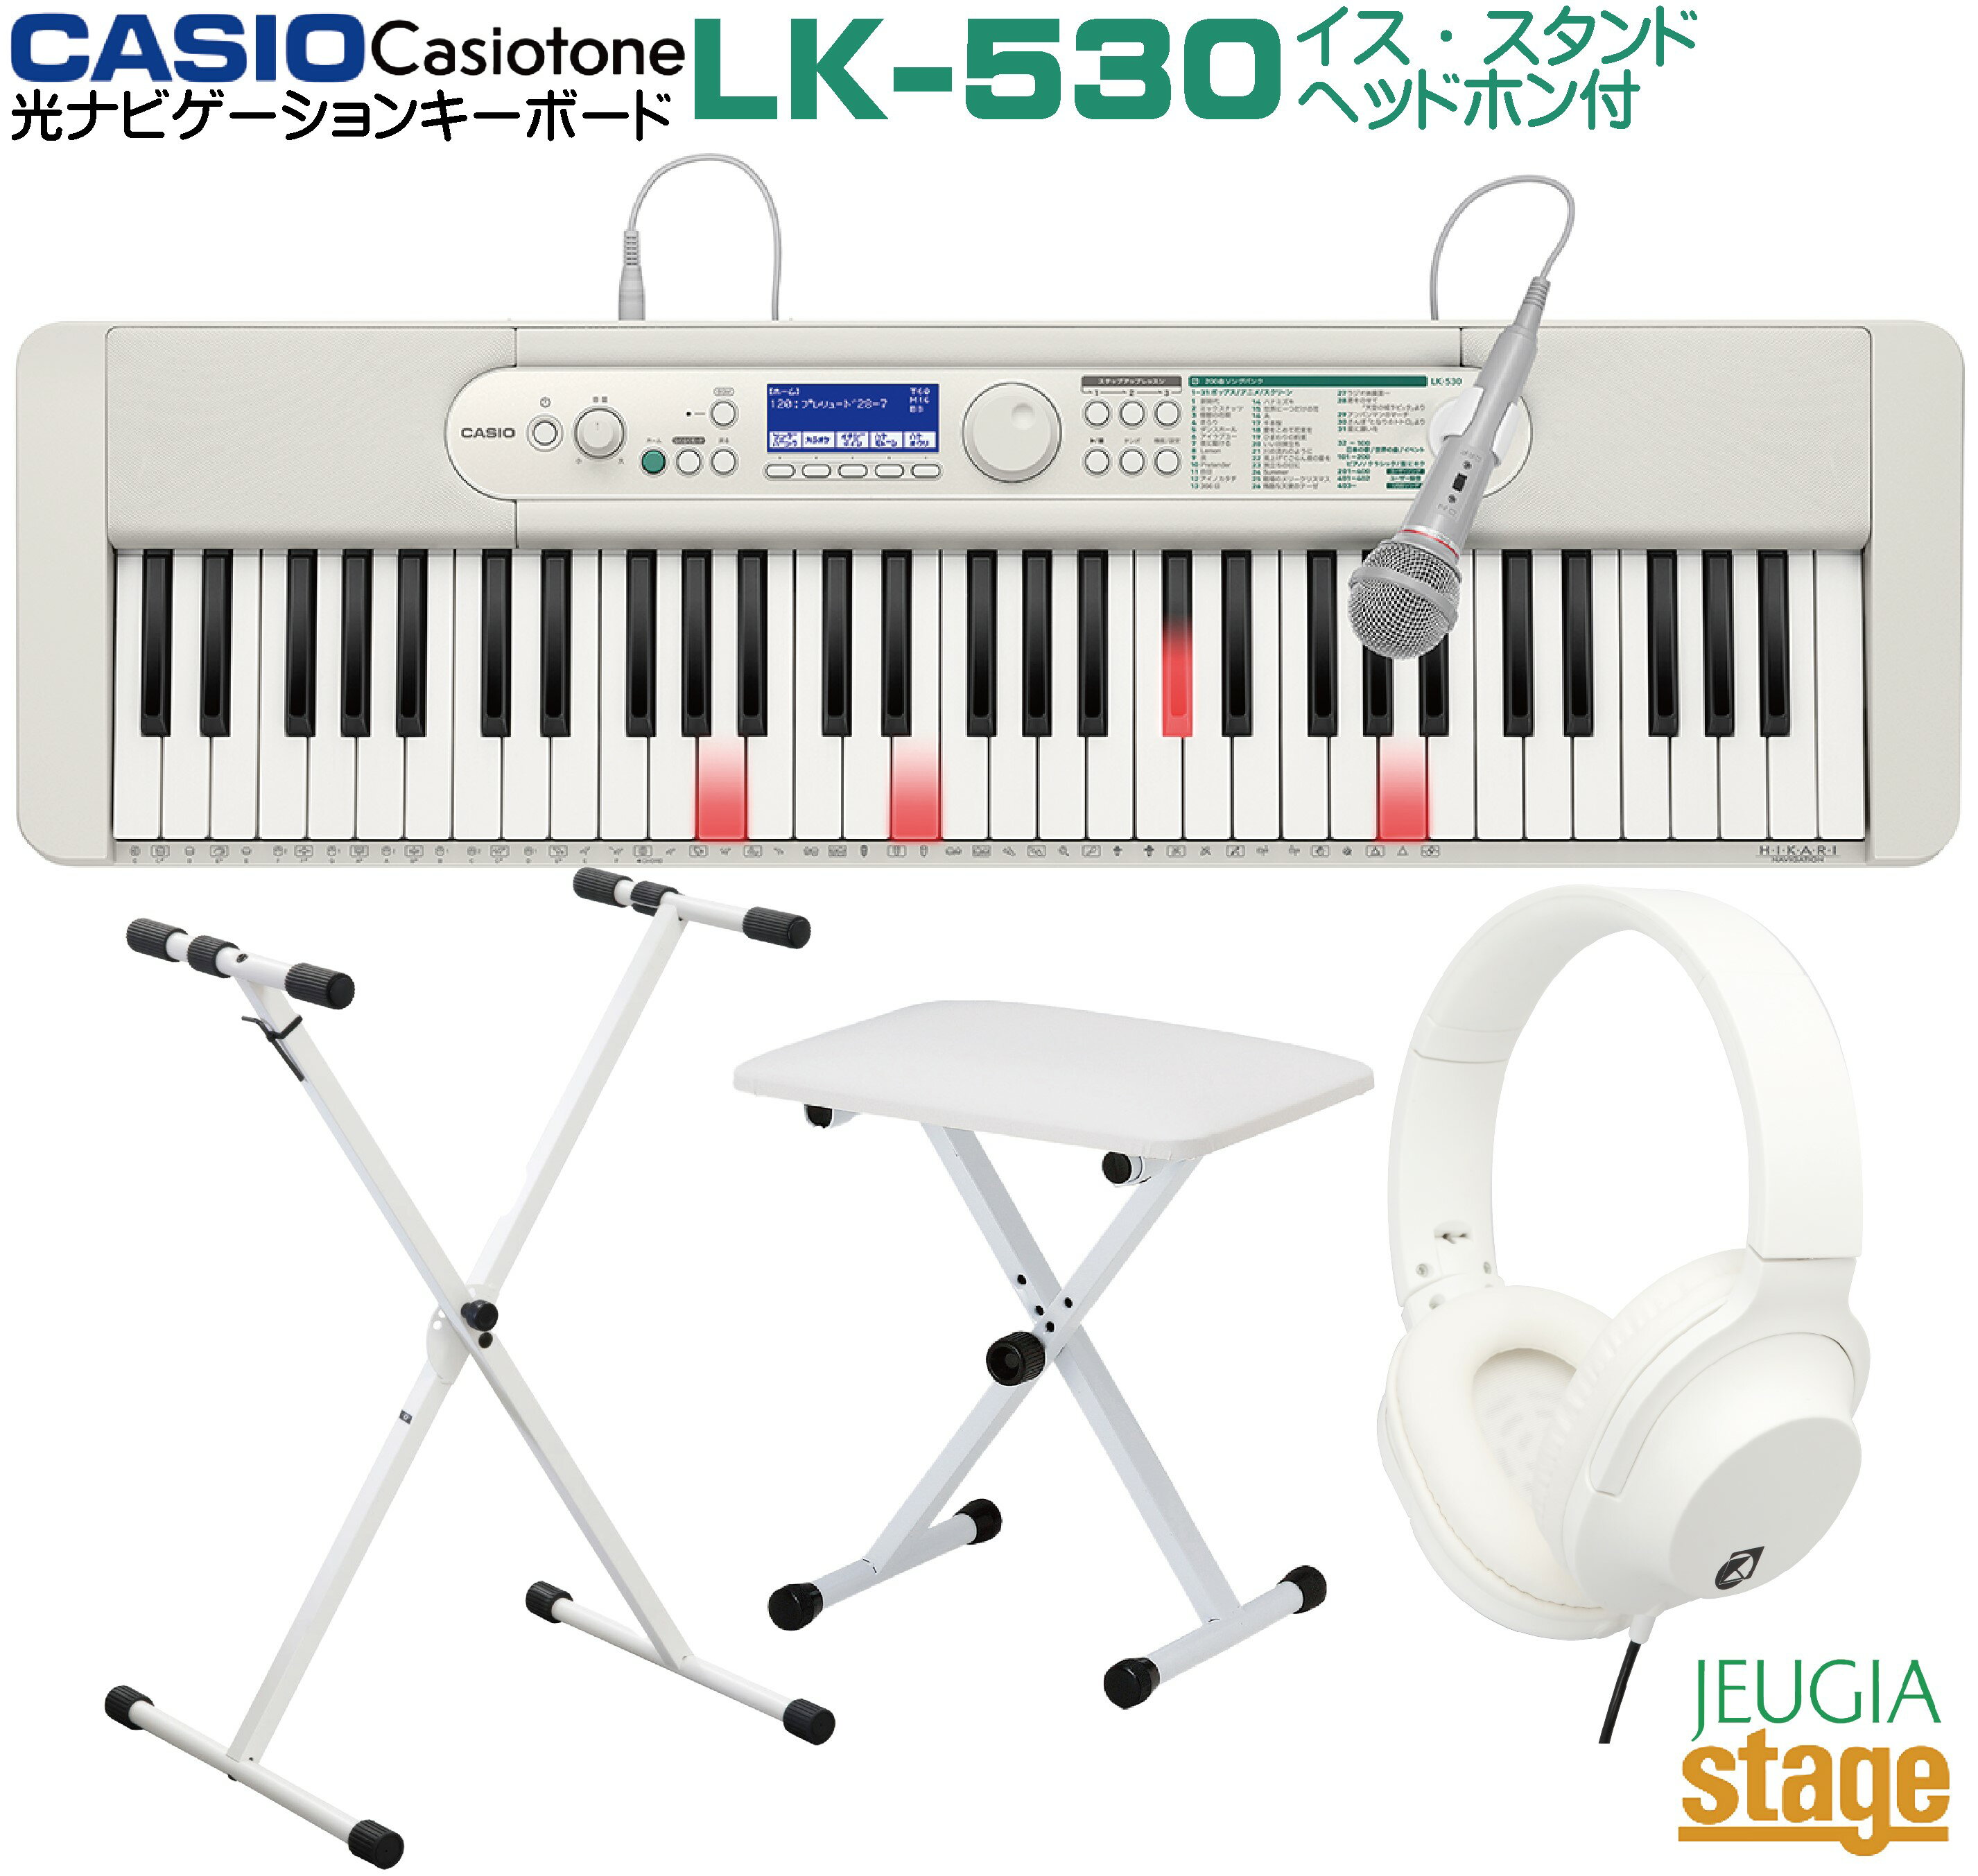 【新製品】CASIO LK-530 Casiotone【イス(白)・スタンド(白)・ヘッドホン(白) 付】カシオ 光ナビゲーション キーボード カシオトーン 61鍵【Stage-Rakuten Keyboard SET】LK-520後継機種